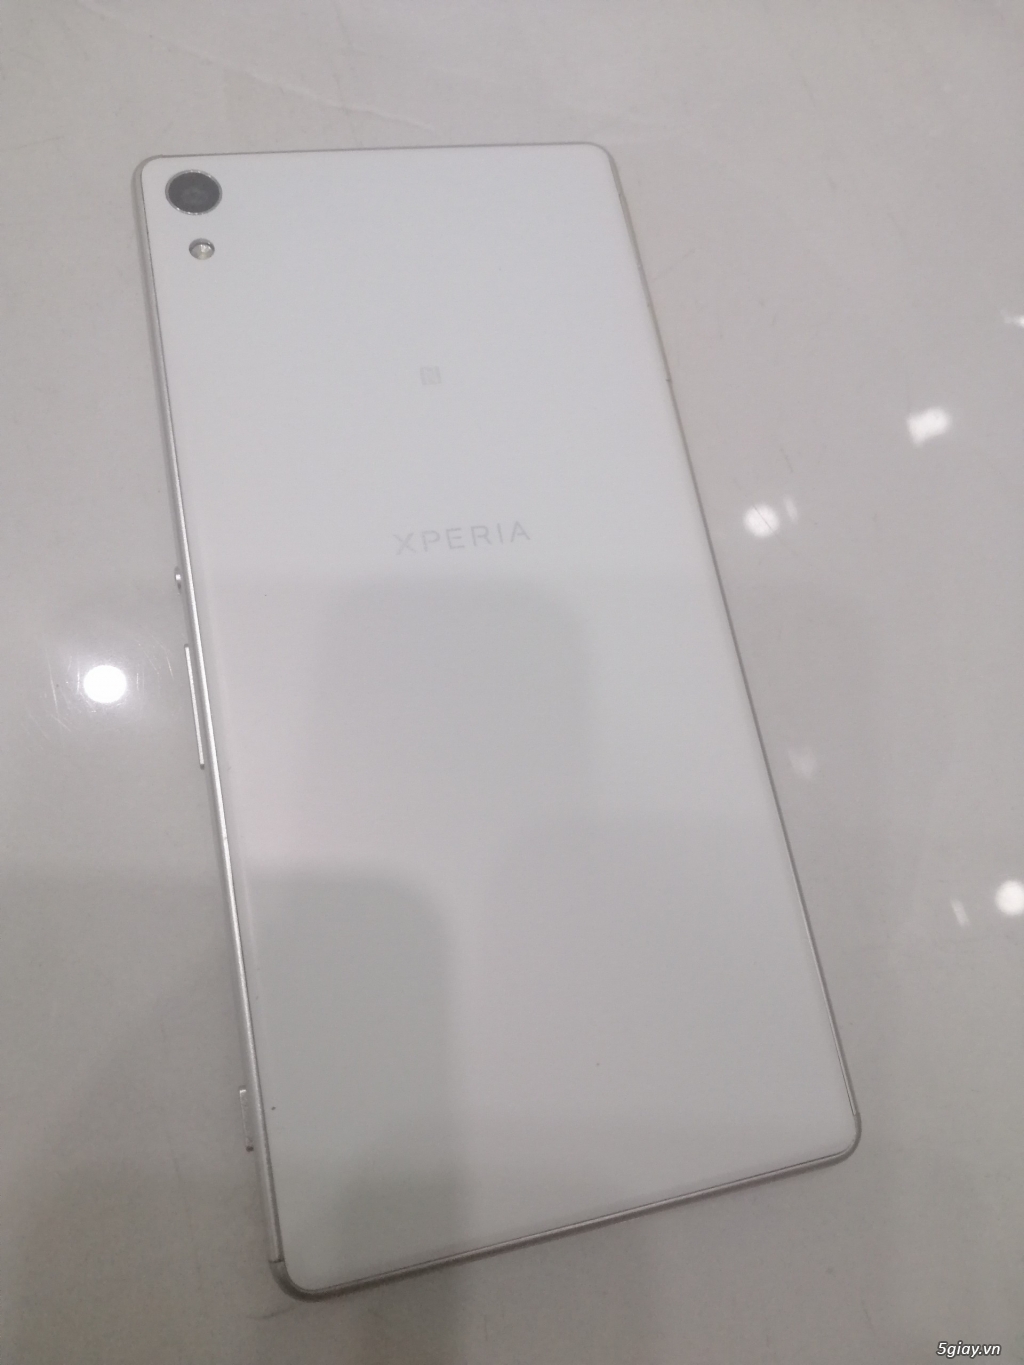 Sony XA Ultra white 99.9% bị lỗi sọc màn hình. End 22h59p - 29.12.2019 - 5